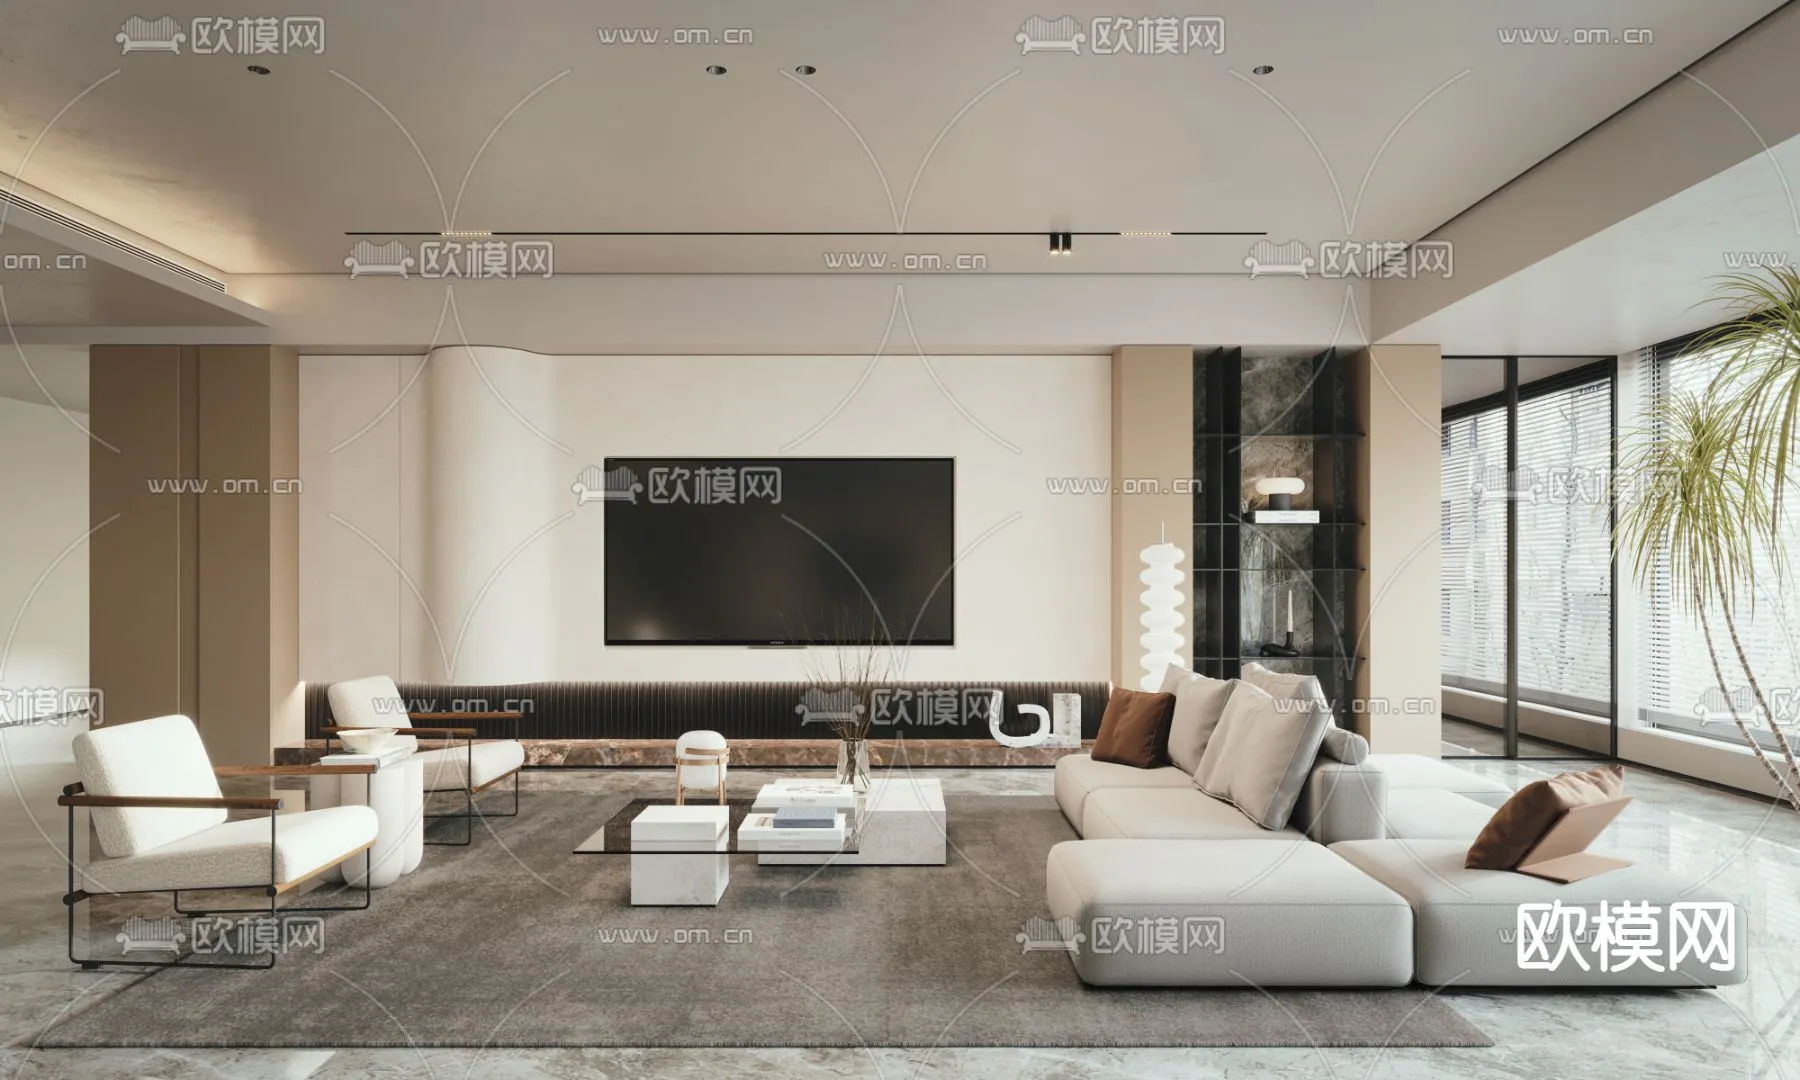 Living Room 3D Scenes – 0921